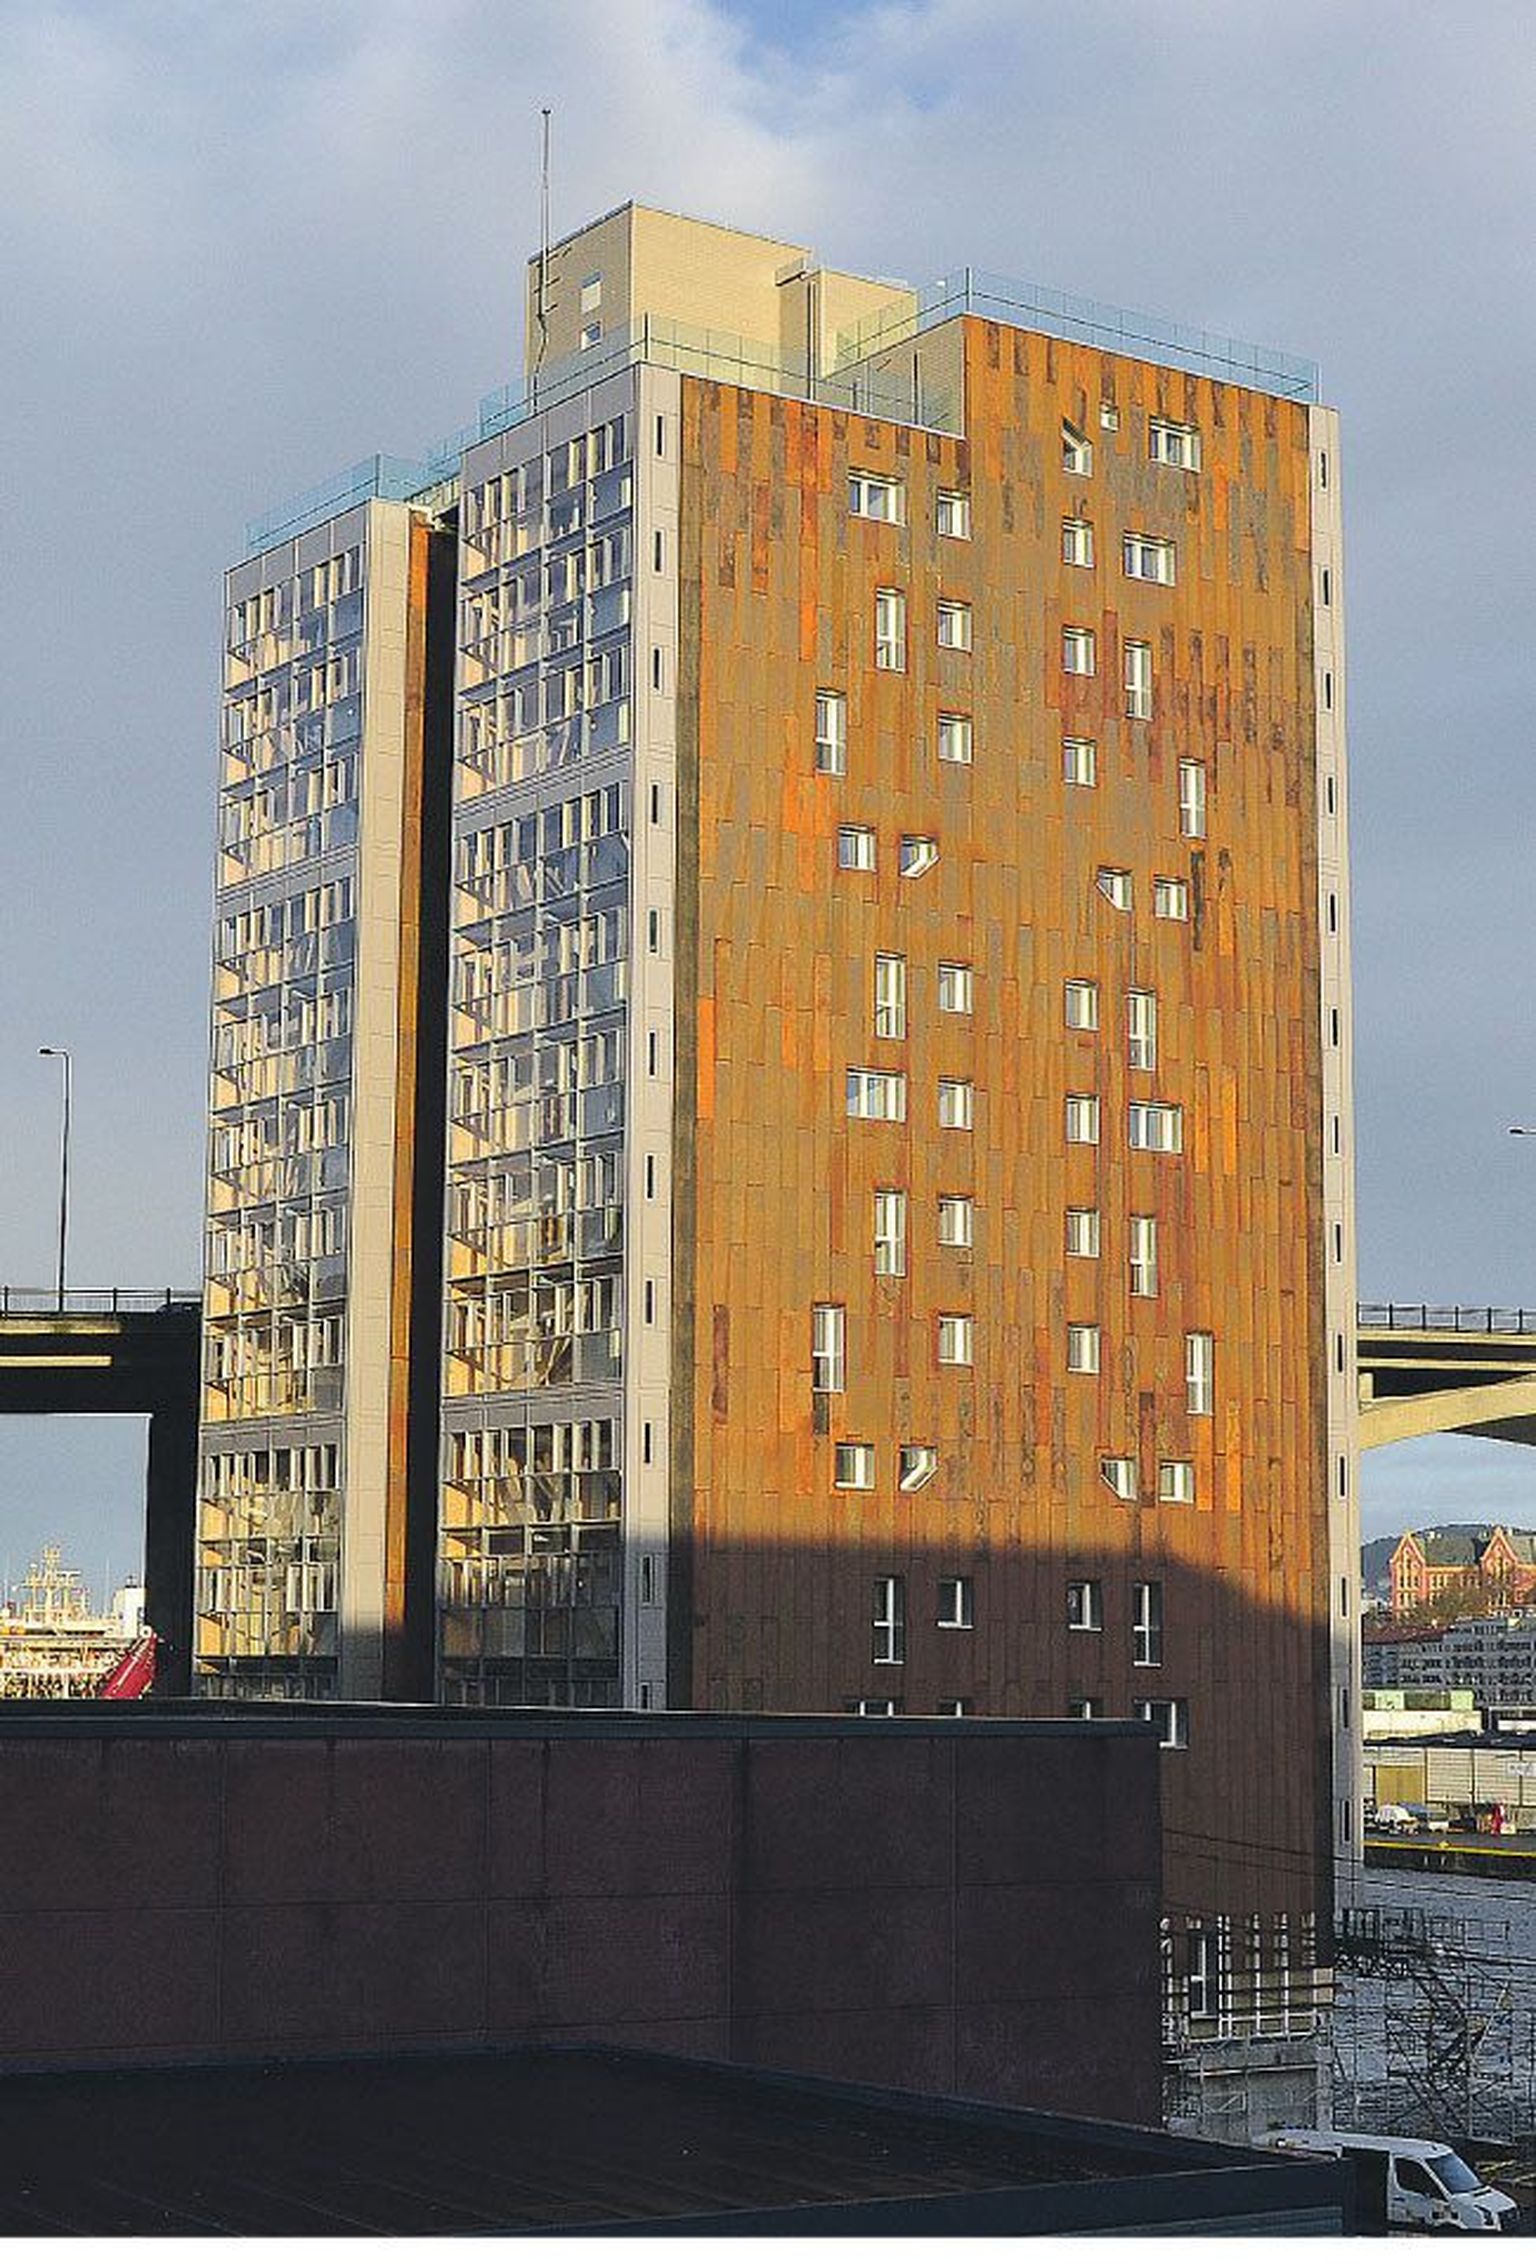 Bergenis valmiv maailma kõrgeim 14. korruseline puitmaja, kuhu elanikud juba jõuludeks sisse saavad kolida. 